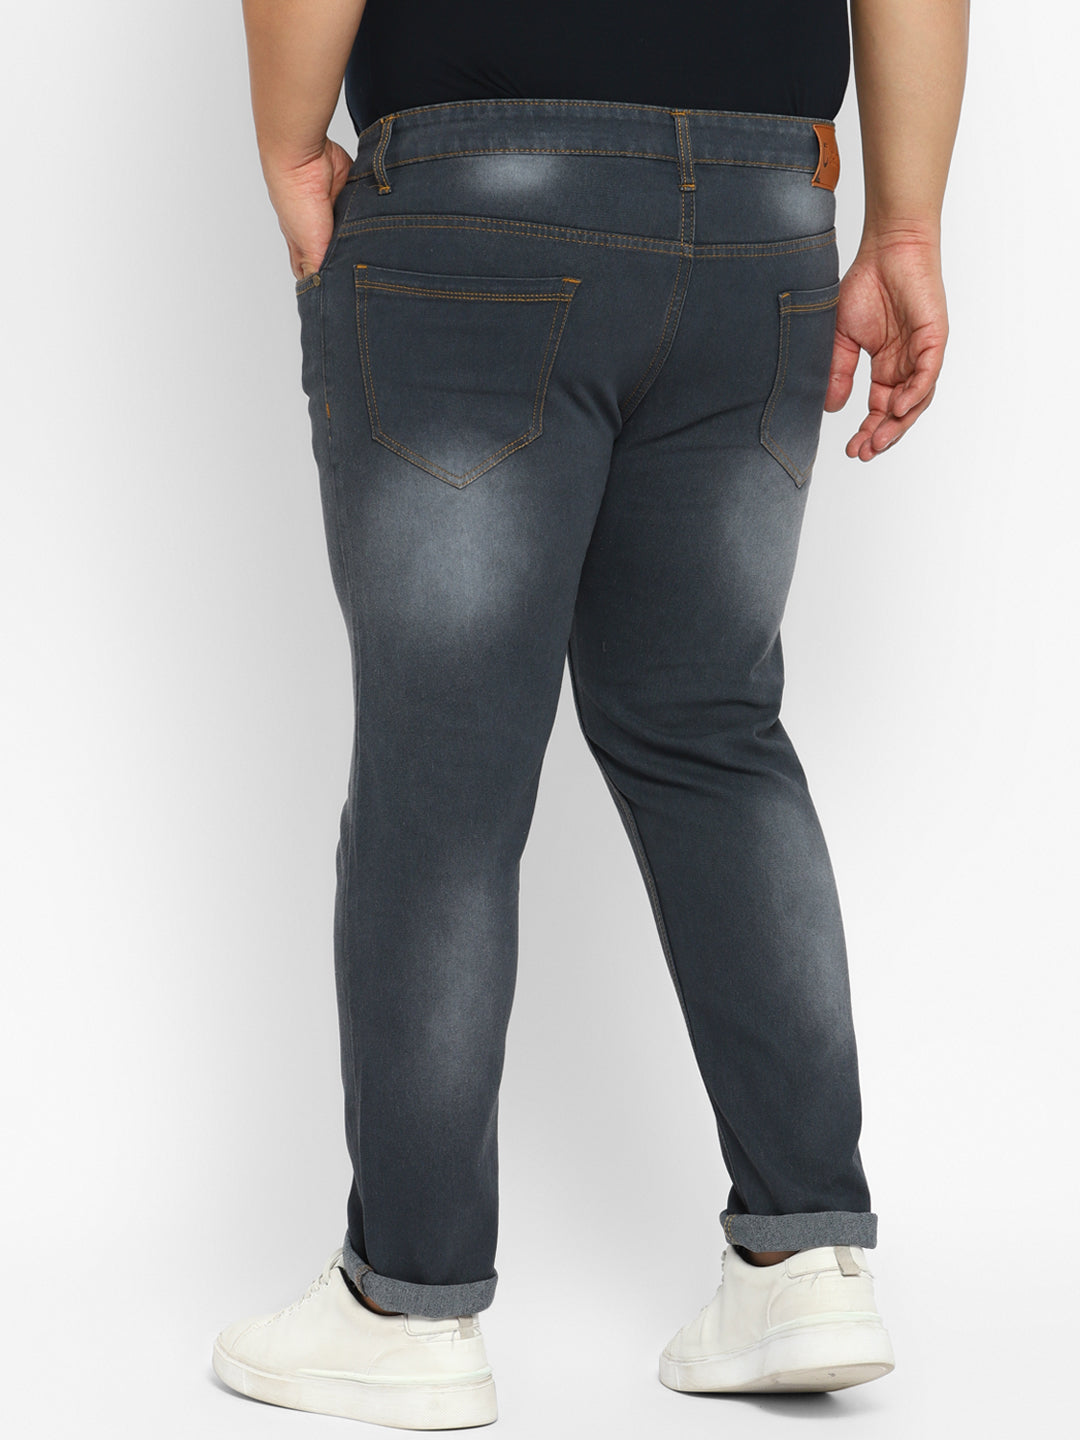 Men's Grey Regular Fit Washed Denim Jeans Stretchable